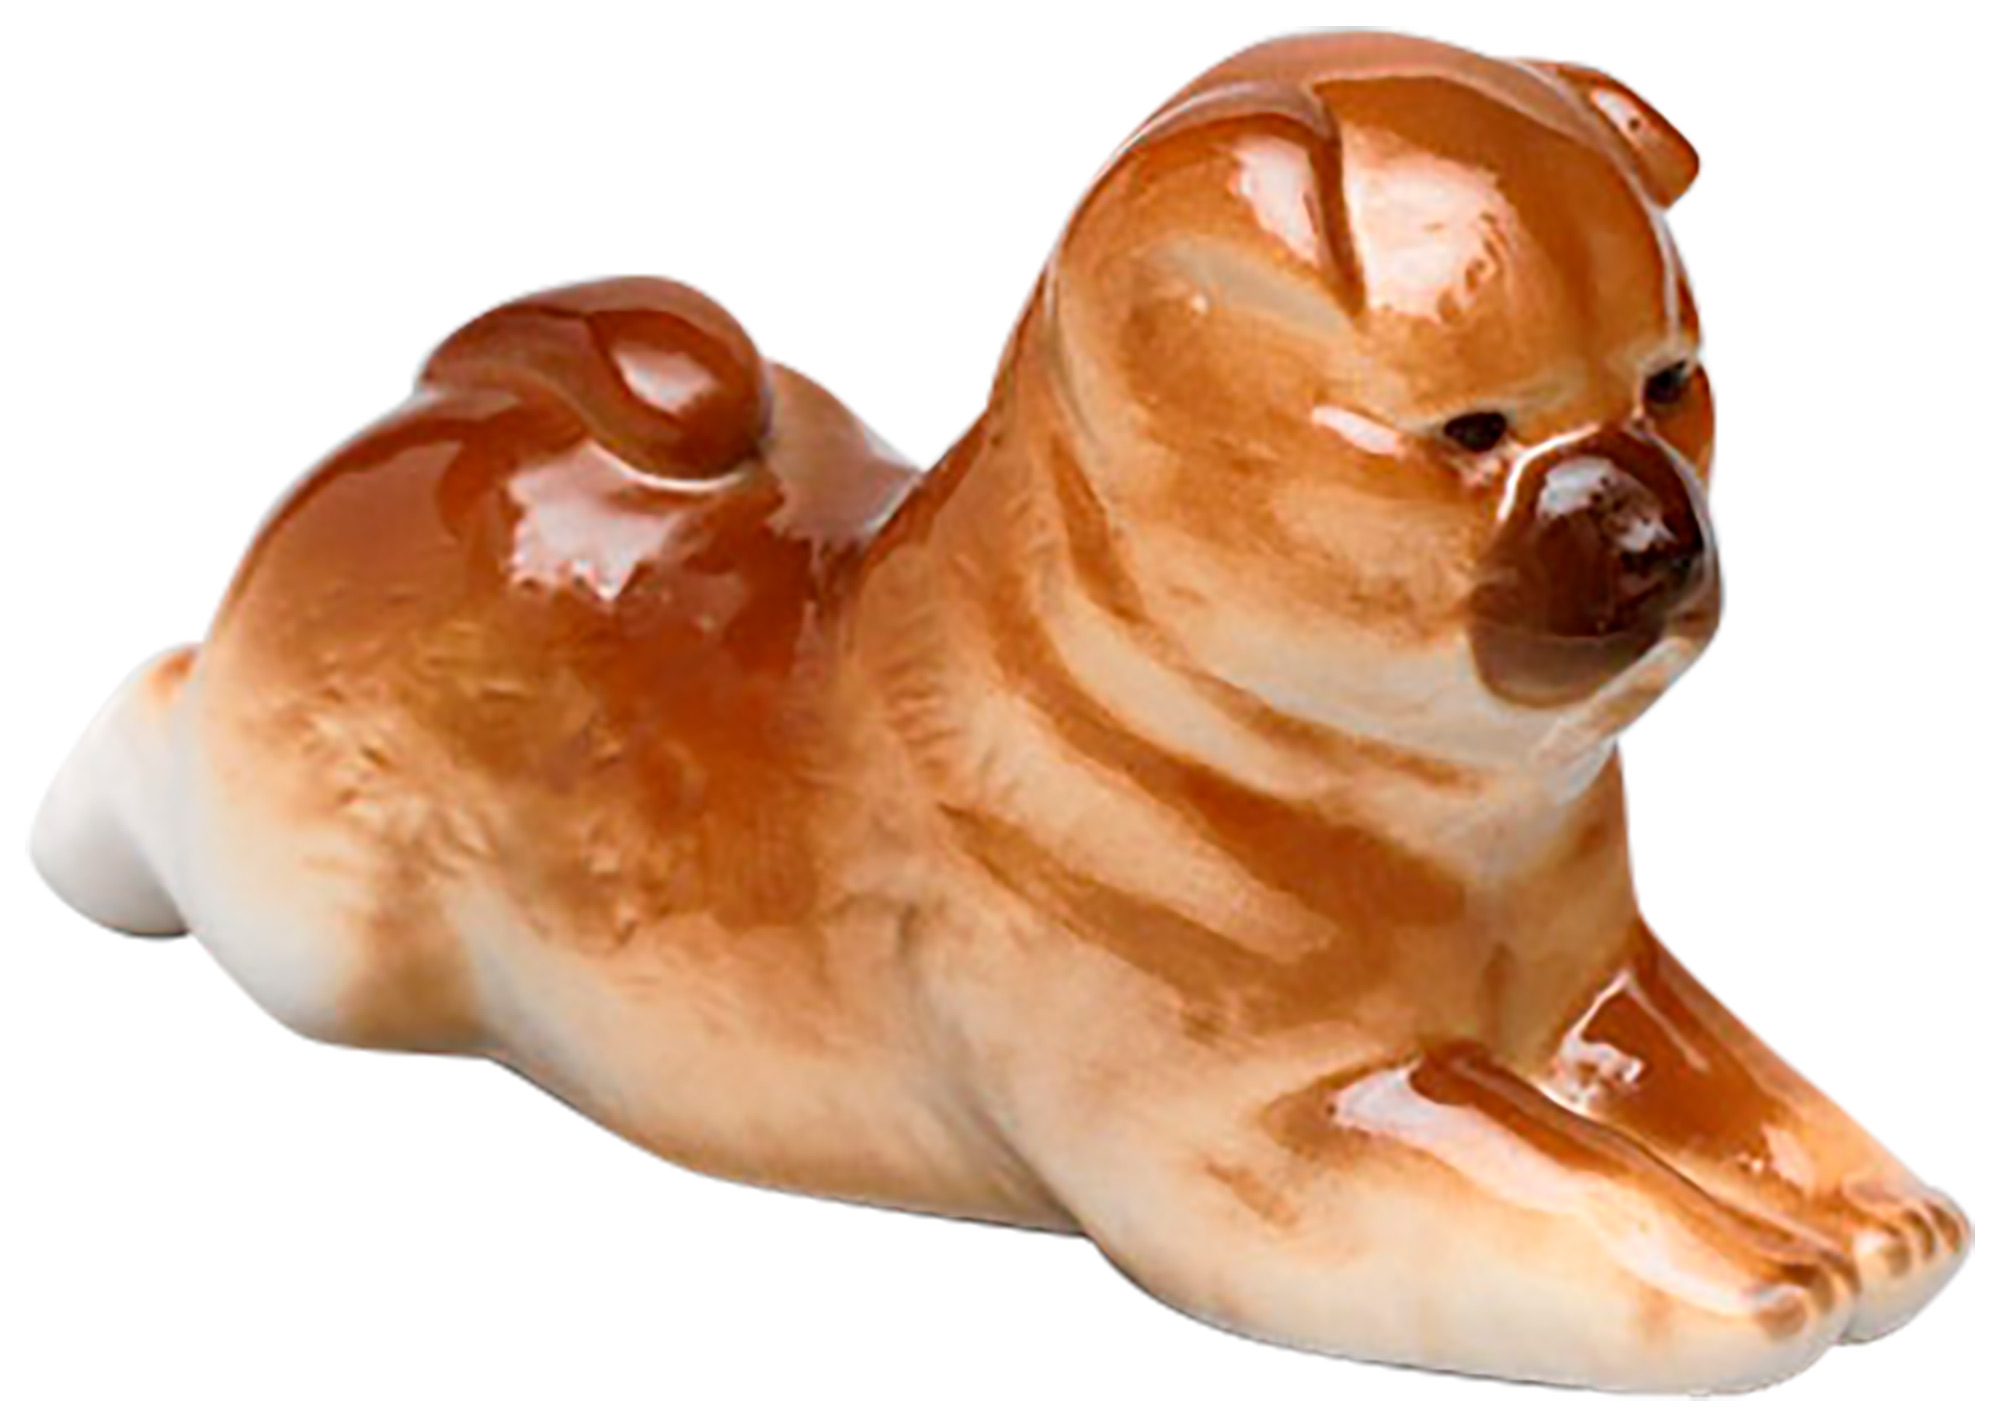 Buy Chow Chow Dog Figurine at GoldenCockerel.com